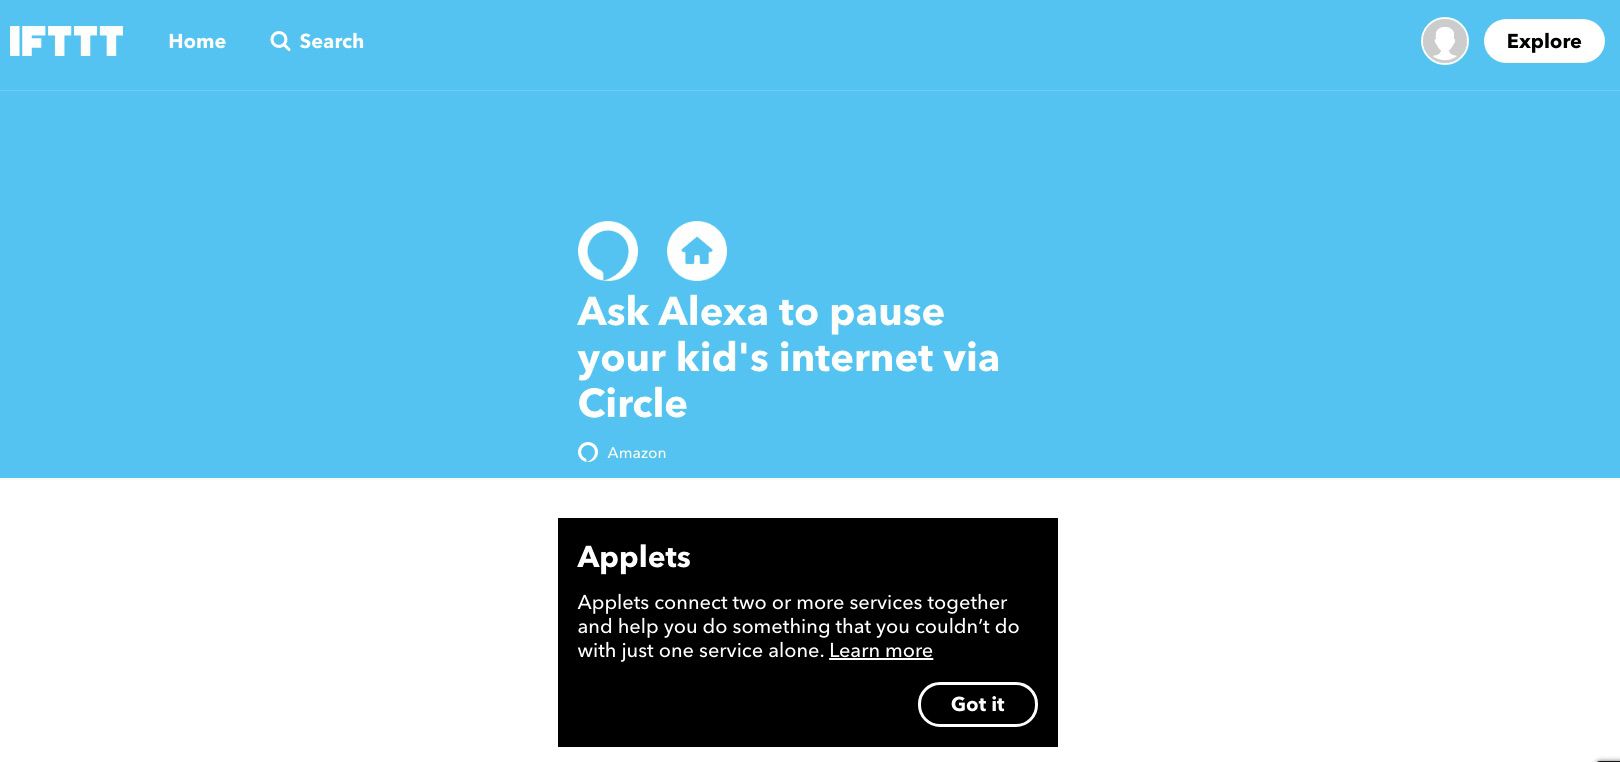 Captura de tela do miniaplicativo IFTTT que permite pausar a Internet do seu filho